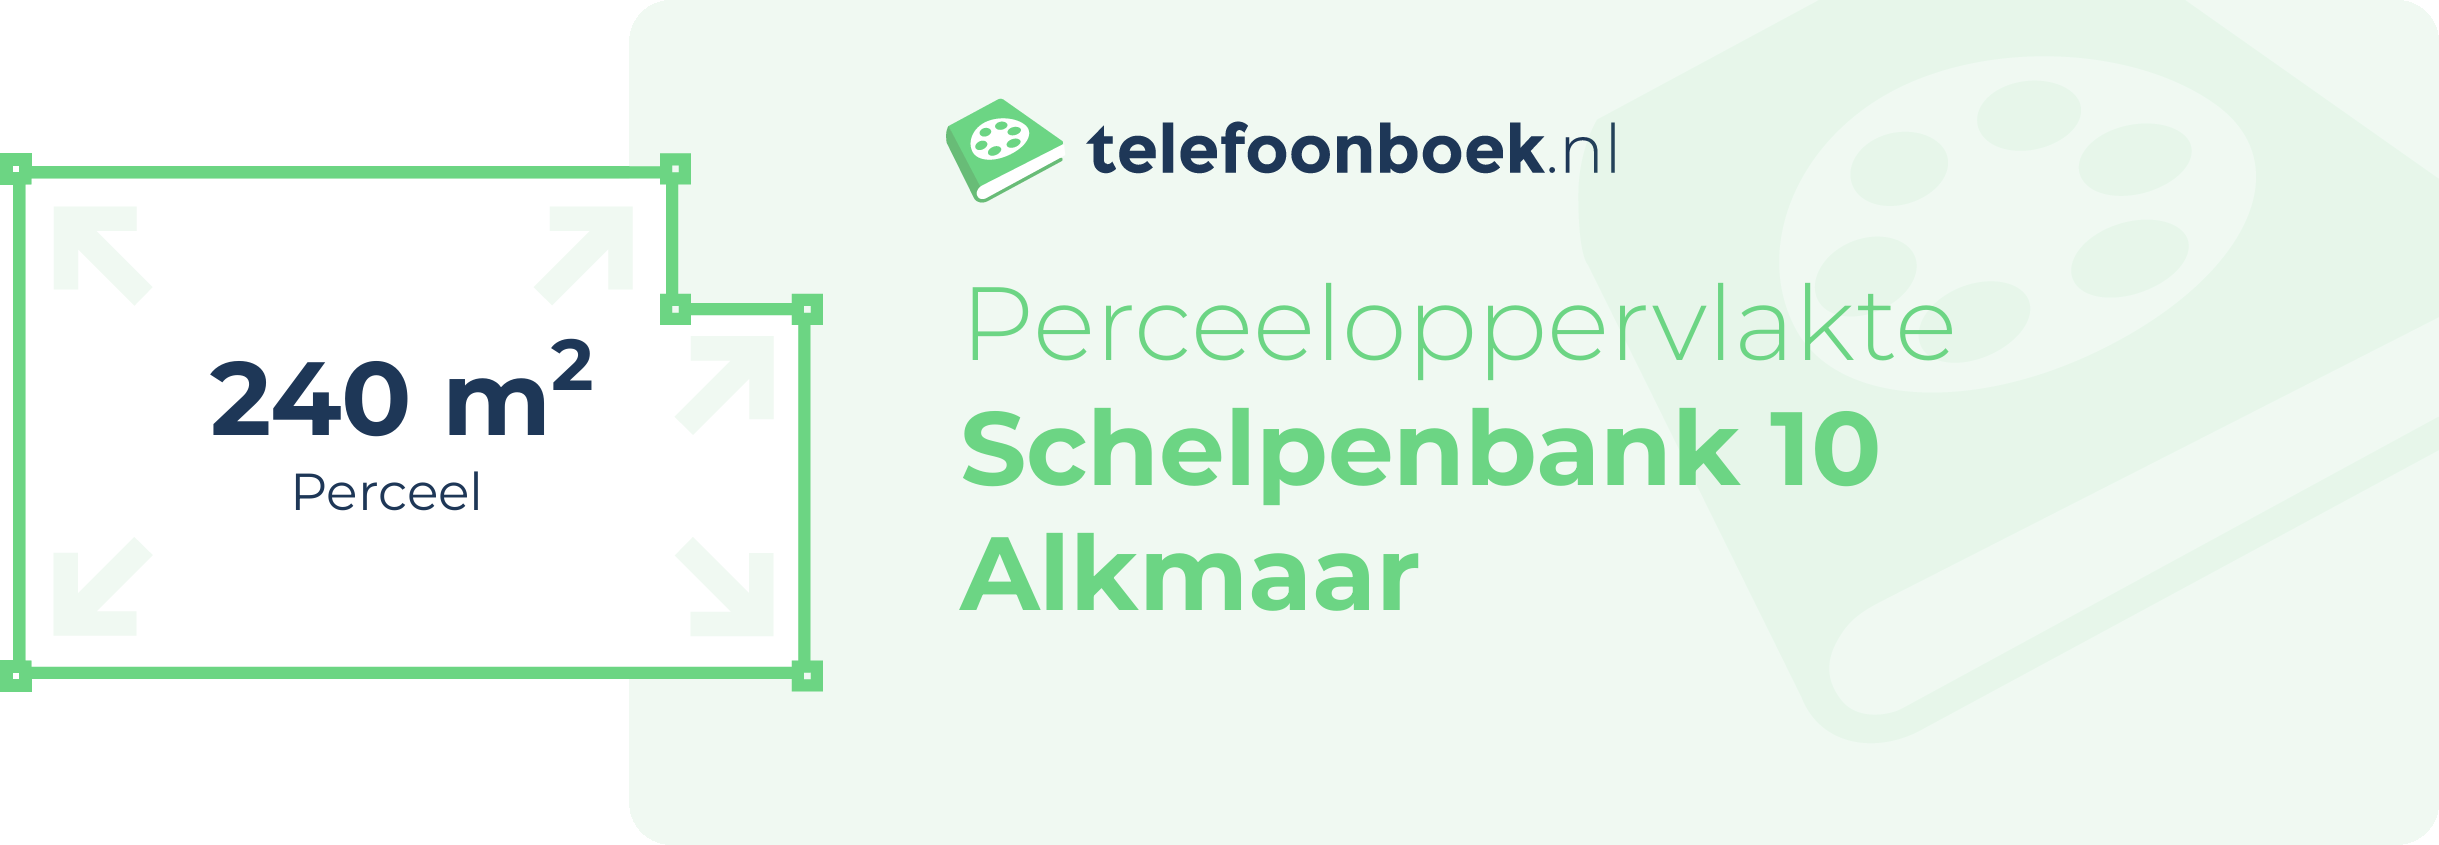 Perceeloppervlakte Schelpenbank 10 Alkmaar